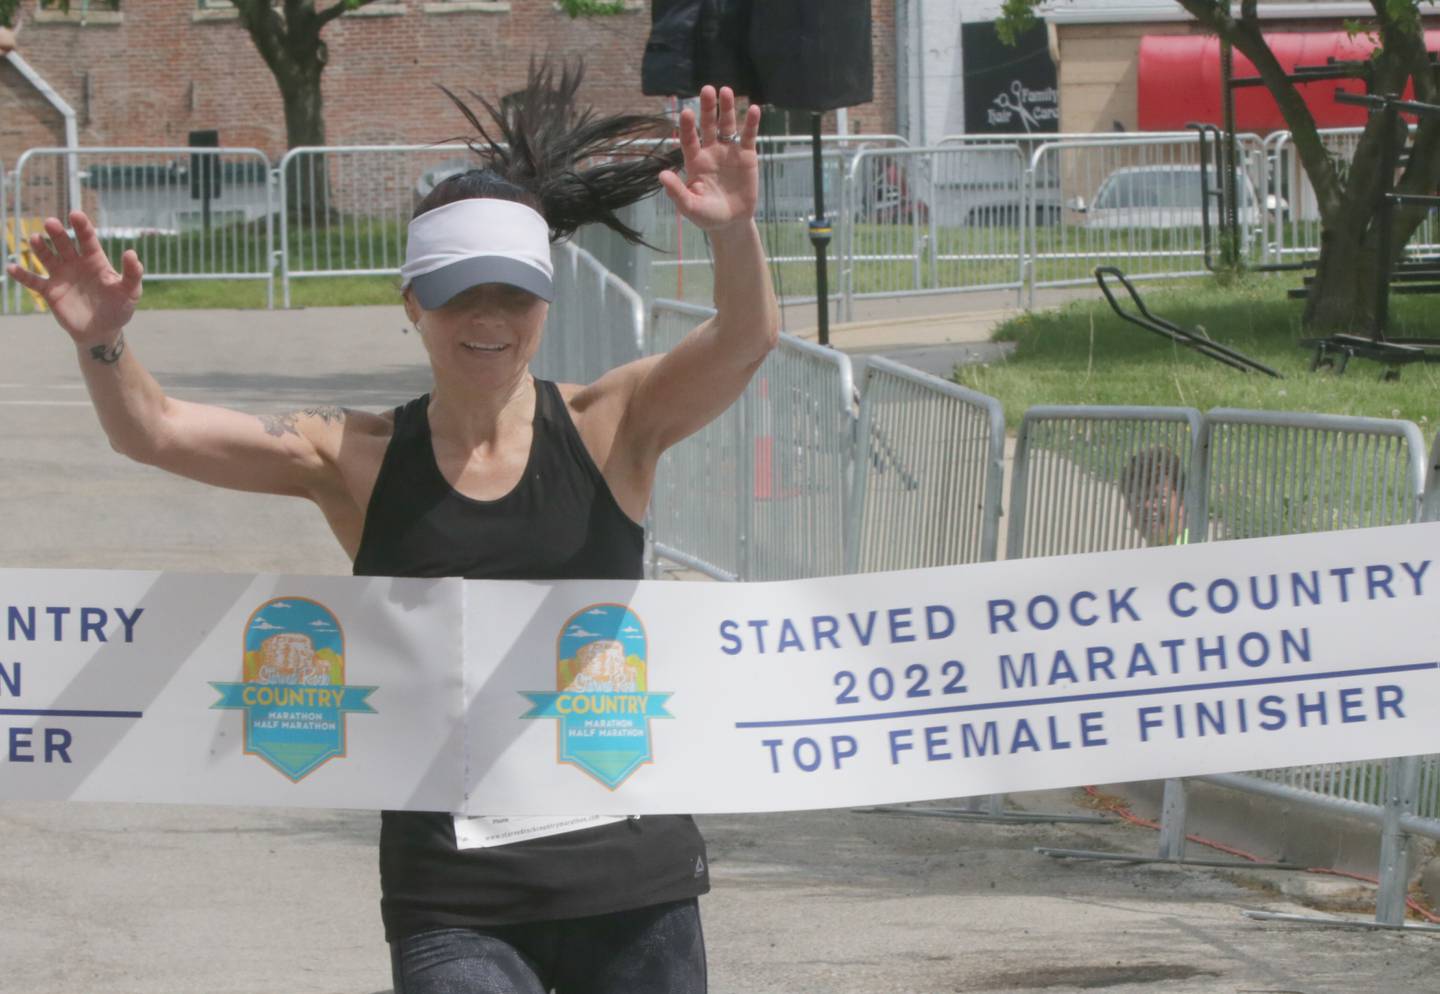 Η Angie Lampi από το Dexter, Mich., είναι η κορυφαία γυναίκα που τελείωσε καθώς περνά τη γραμμή τερματισμού κατά τη διάρκεια του Starved Rock Marathon το Σάββατο, 14 Μαΐου 2022, στην Οτάβα.